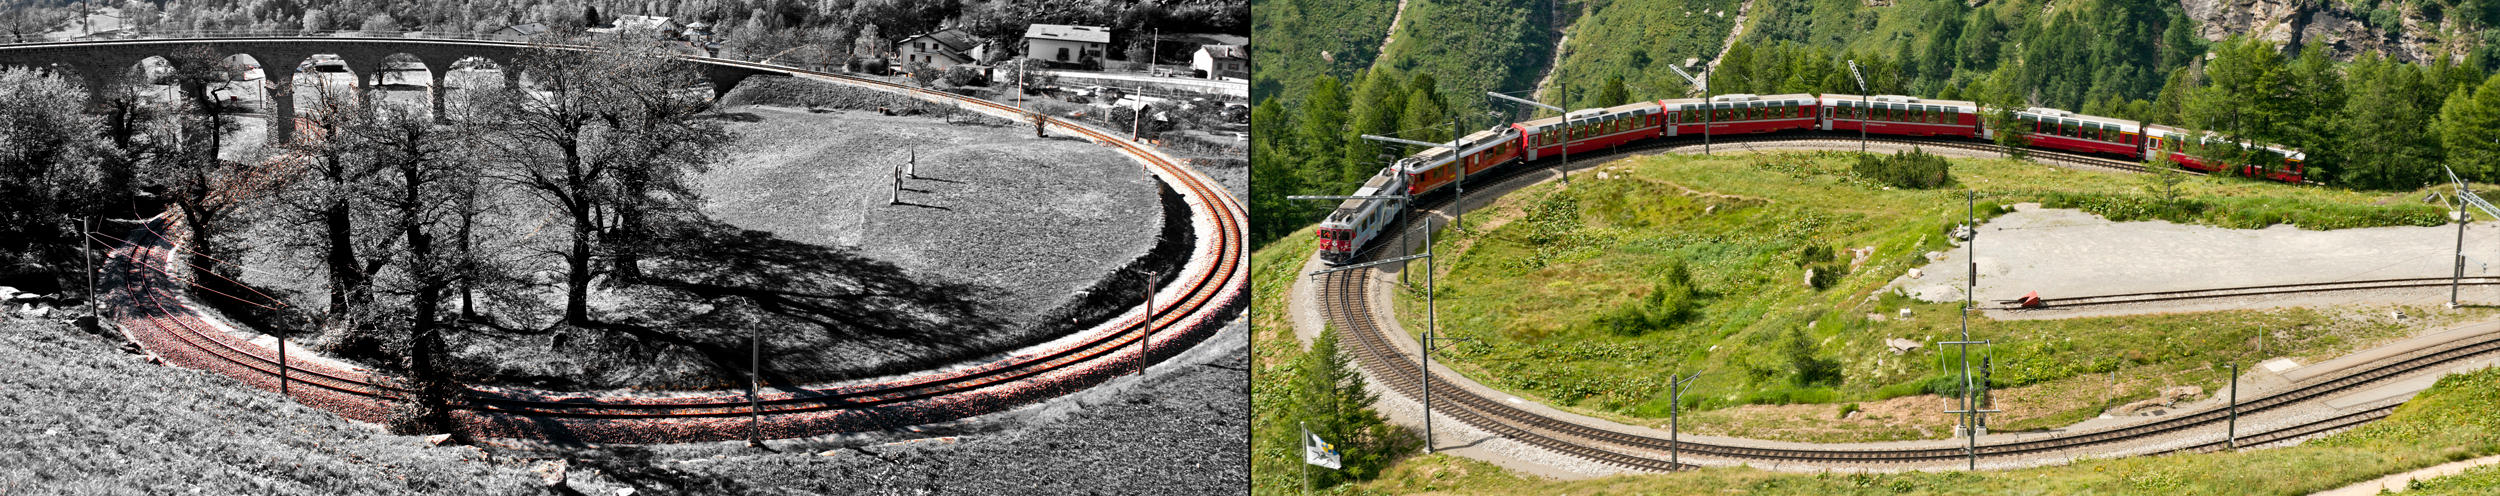 Bernina Express(贝尔尼纳)特快列车